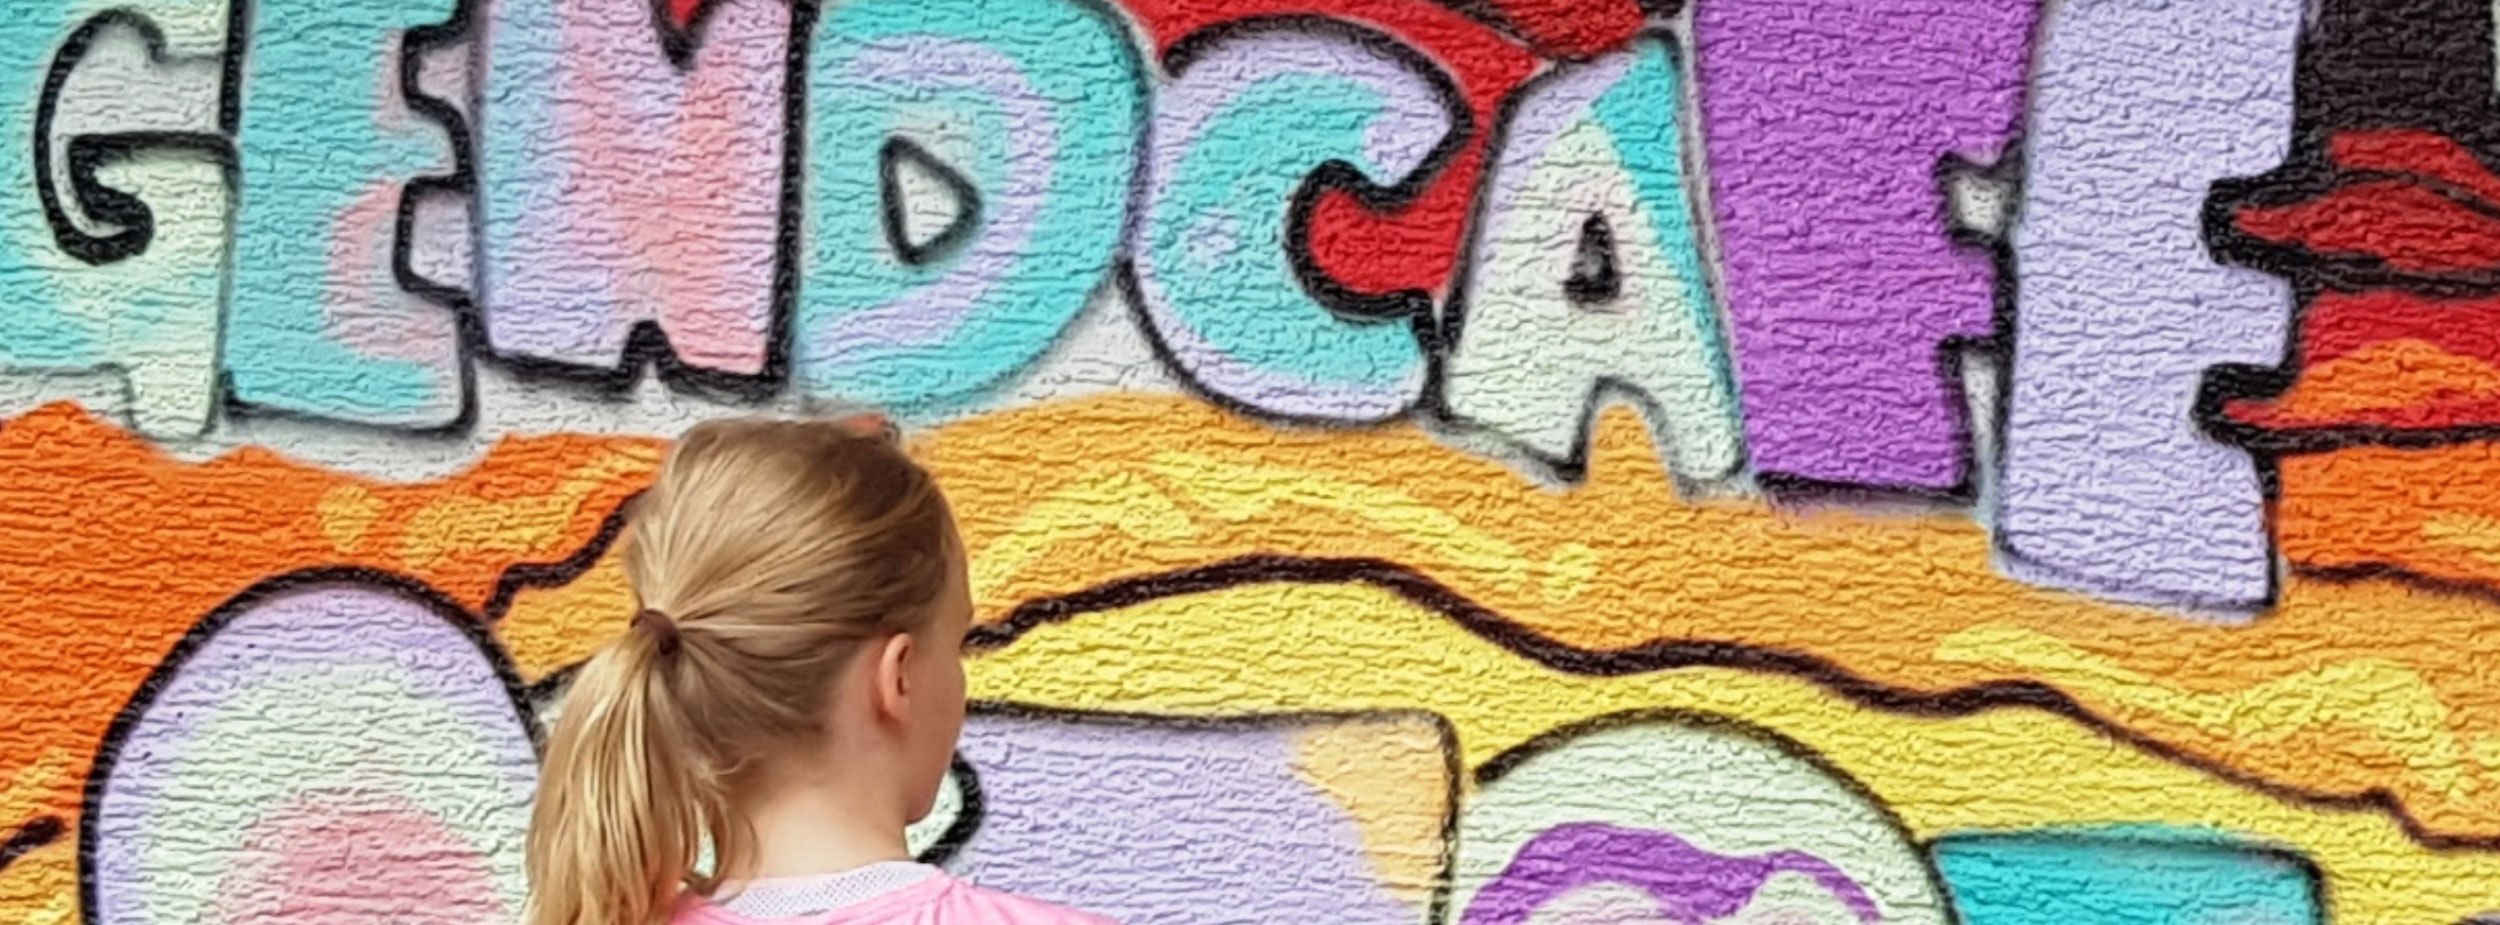 Graffitiwand auf die das Wort Jugendcafé gesprayt wurde